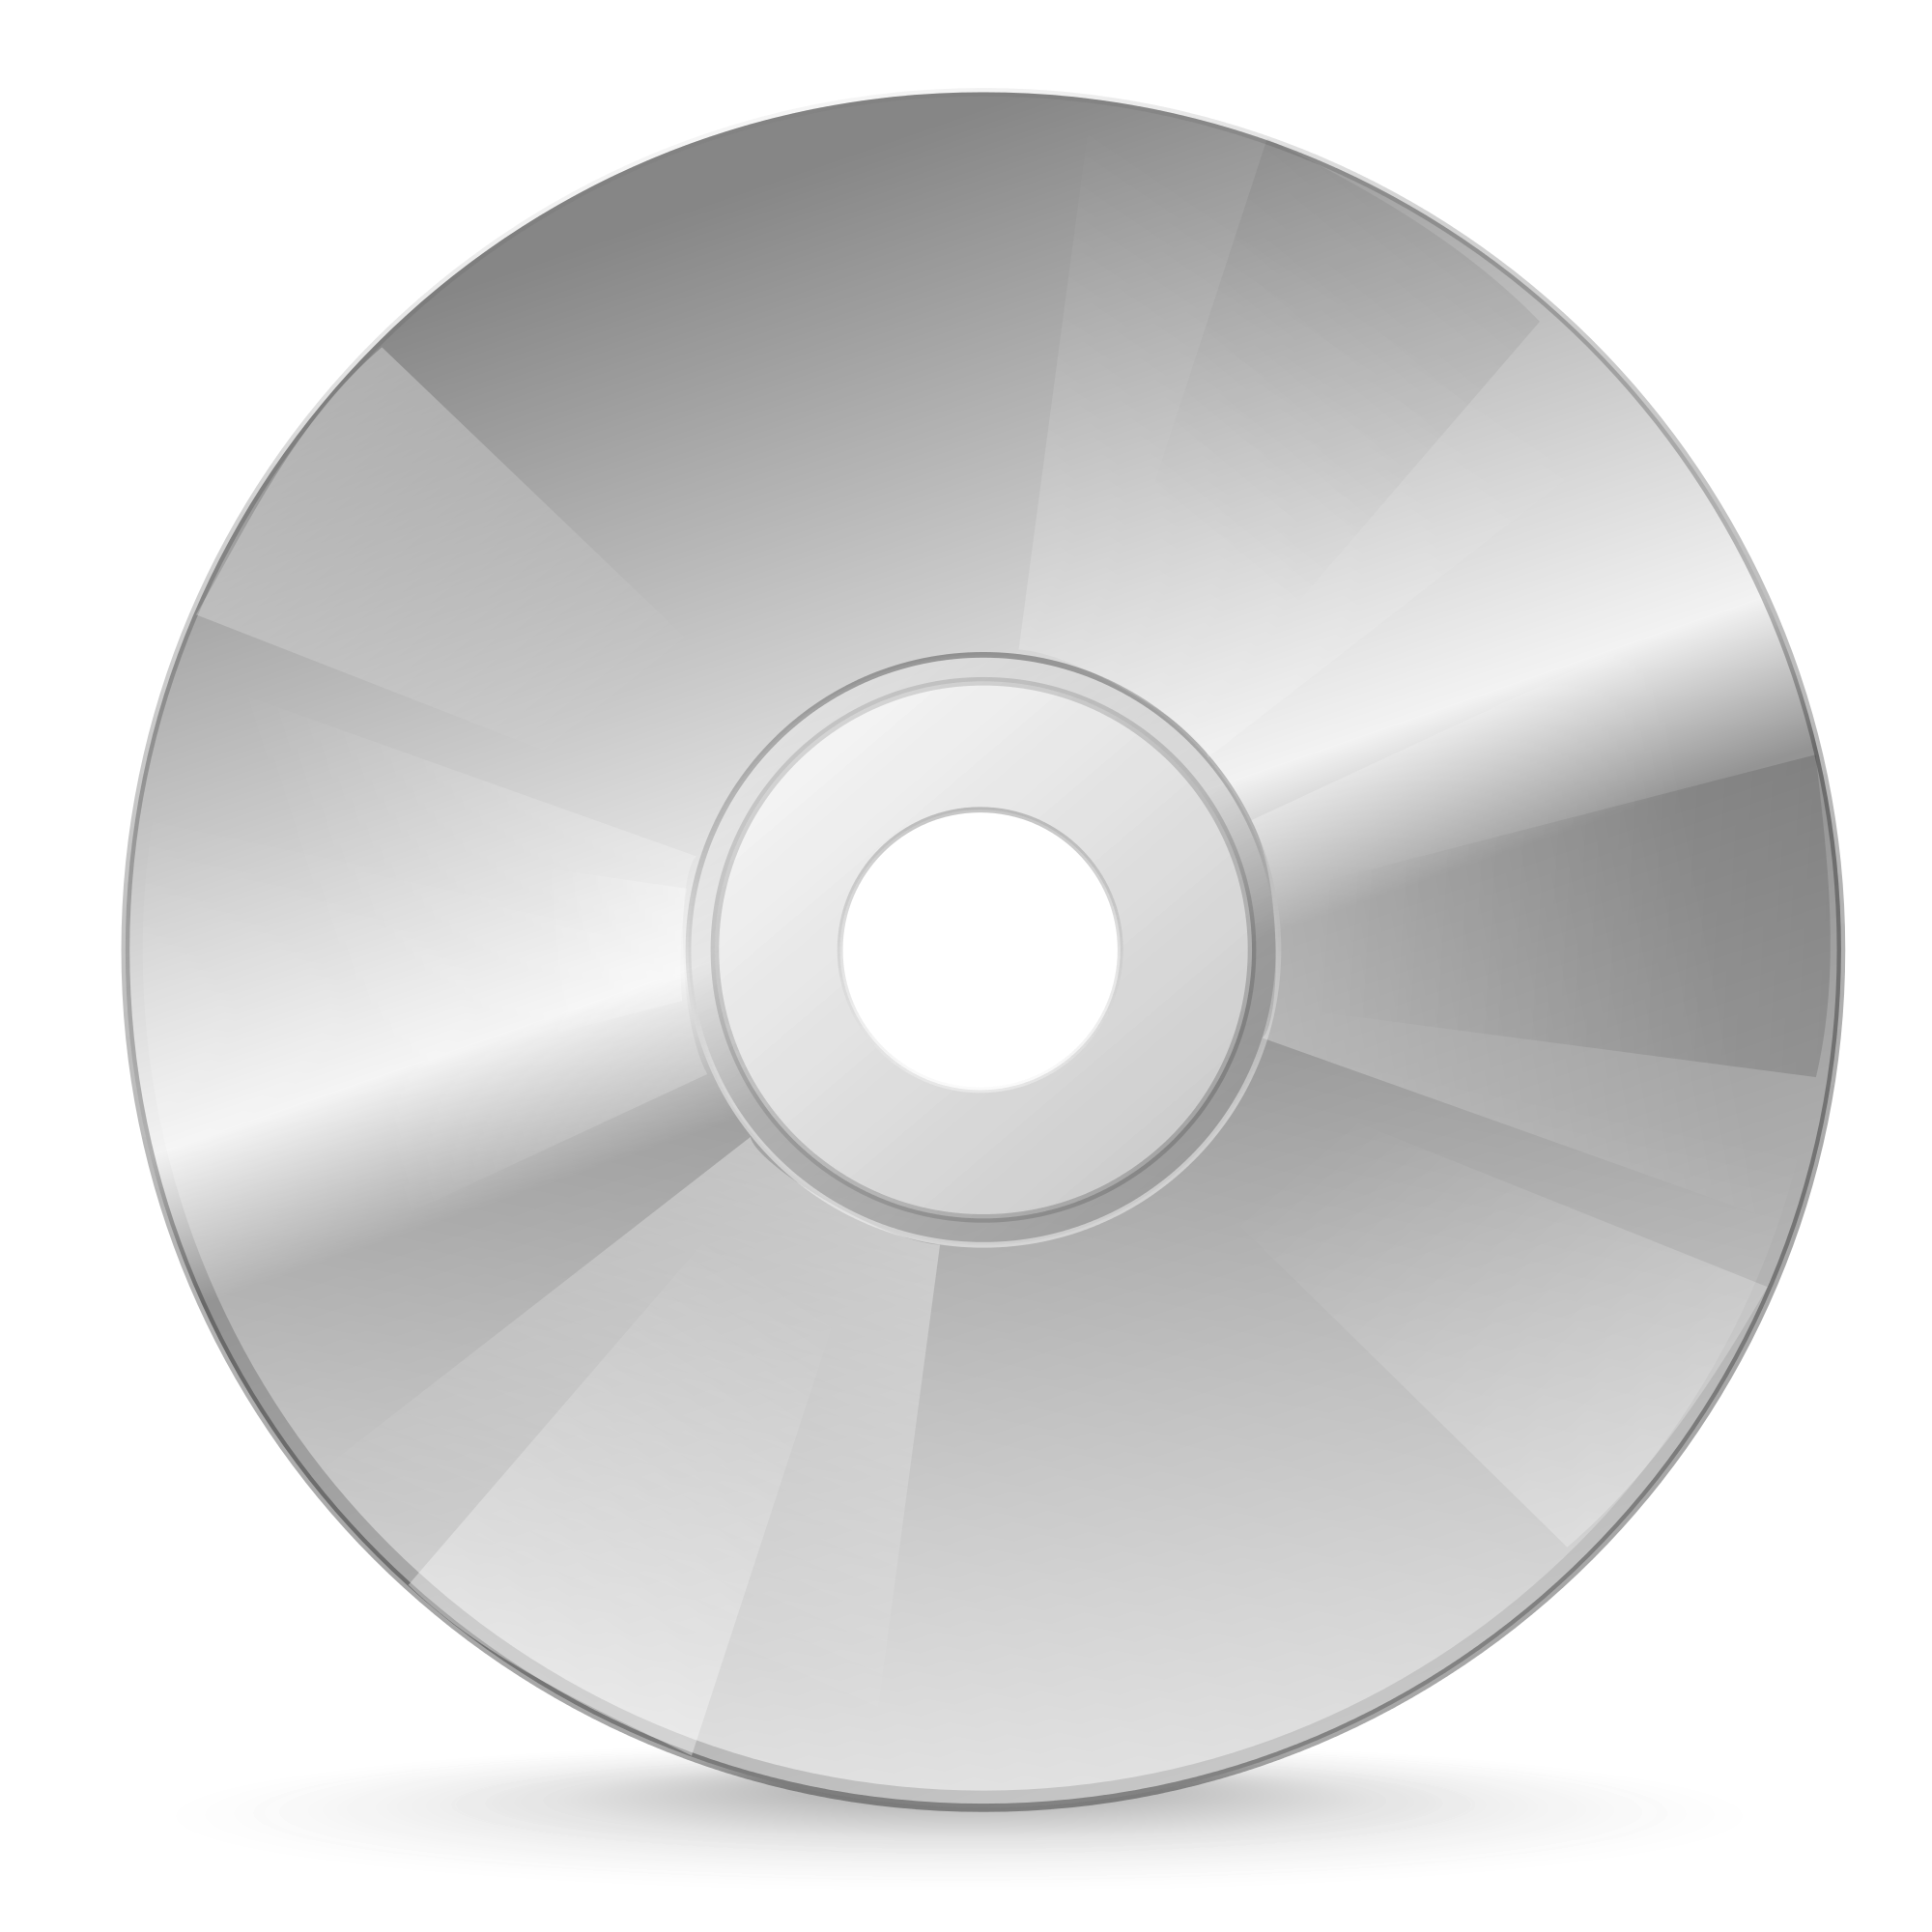 Диск браузер. CD (Compact Disk ROM) DVD (Digital versatile Disc). Compact Disc (CD). CD (Compact Disc) — оптический носитель. Compact Disc – компакт диск.